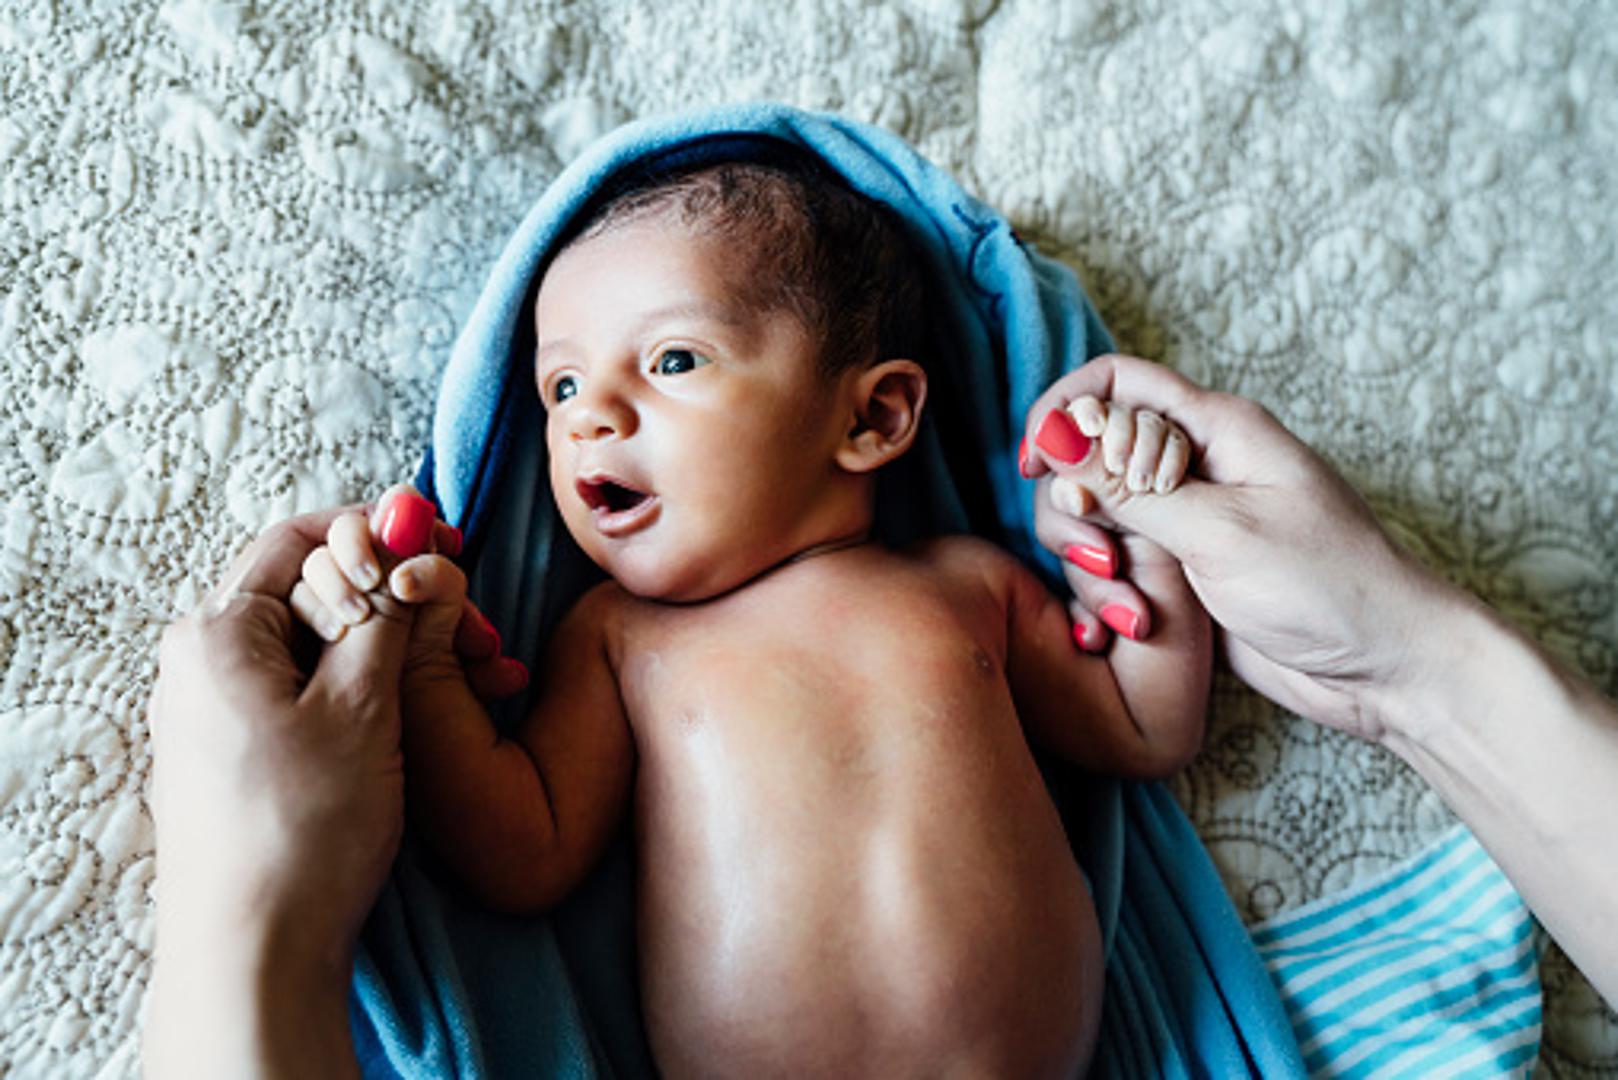 Pažljivo operite intimne dijelove tijela bebe jer u suprotnom ostaci urina mogu iritirati bebinu kožu, uzrokovati osip i svrbež.